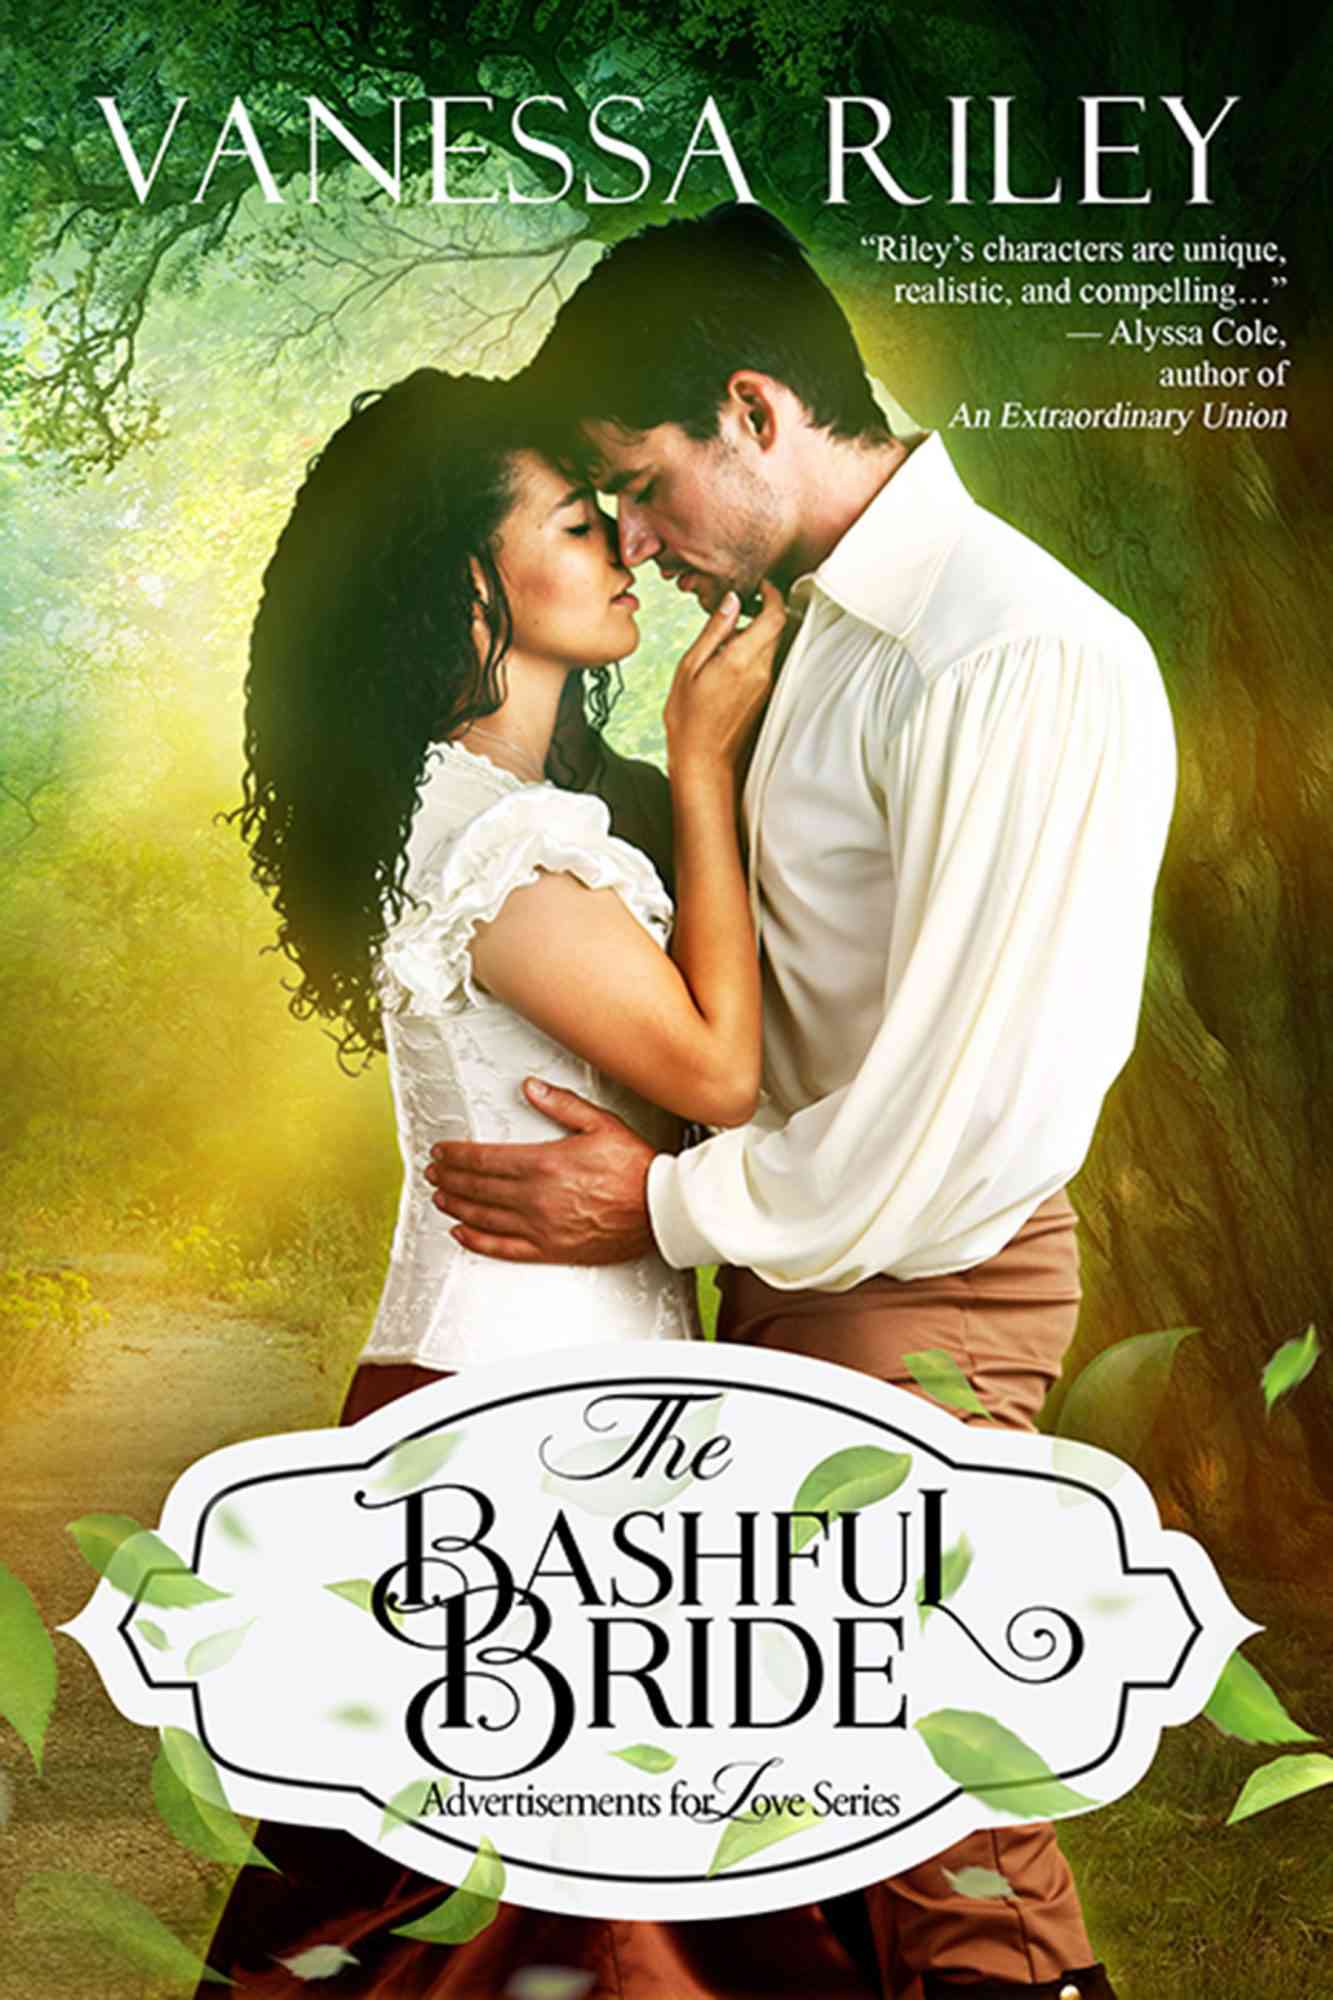 May romance novels capitalize on royal wedding fever 